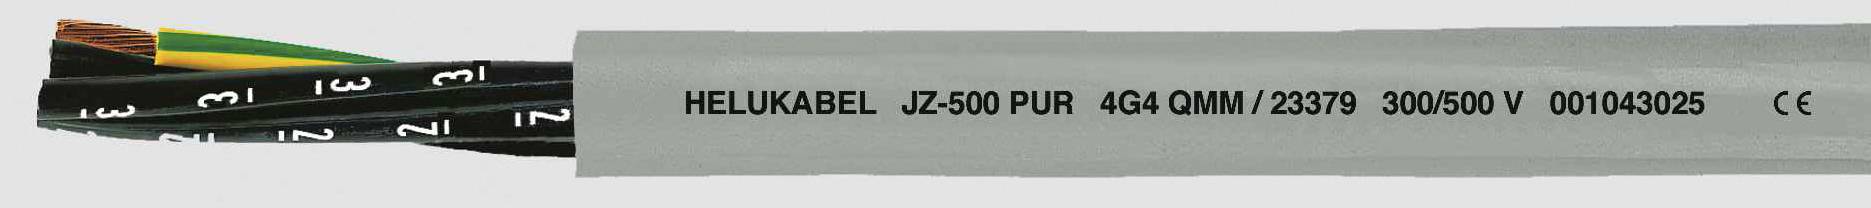 HELUKABEL JZ-500 PUR Steuerleitung 4 G 1 mm² Grau 23347 100 m